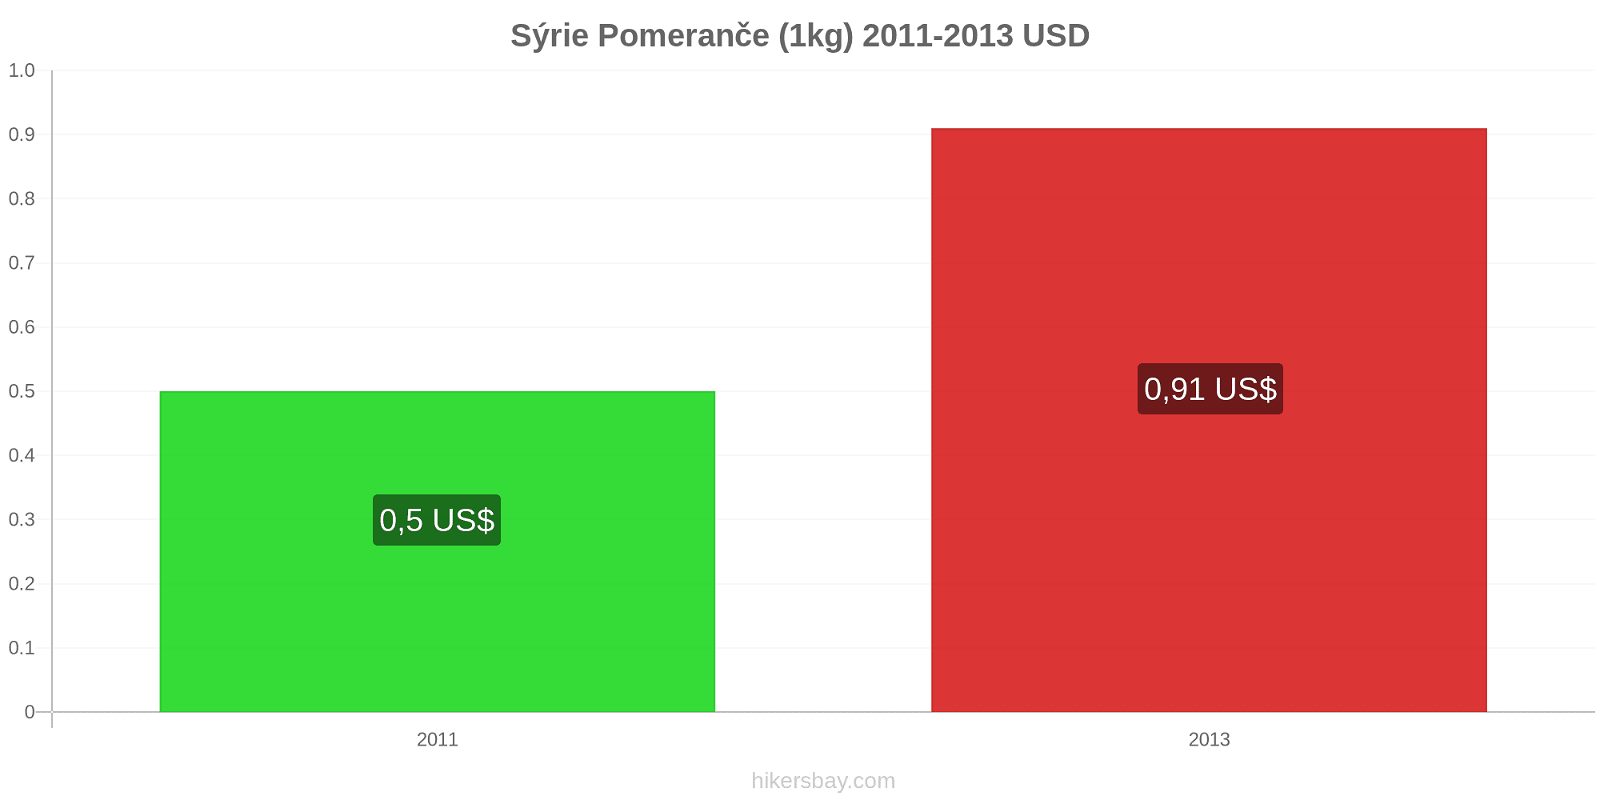 Sýrie změny cen Pomeranče (1kg) hikersbay.com